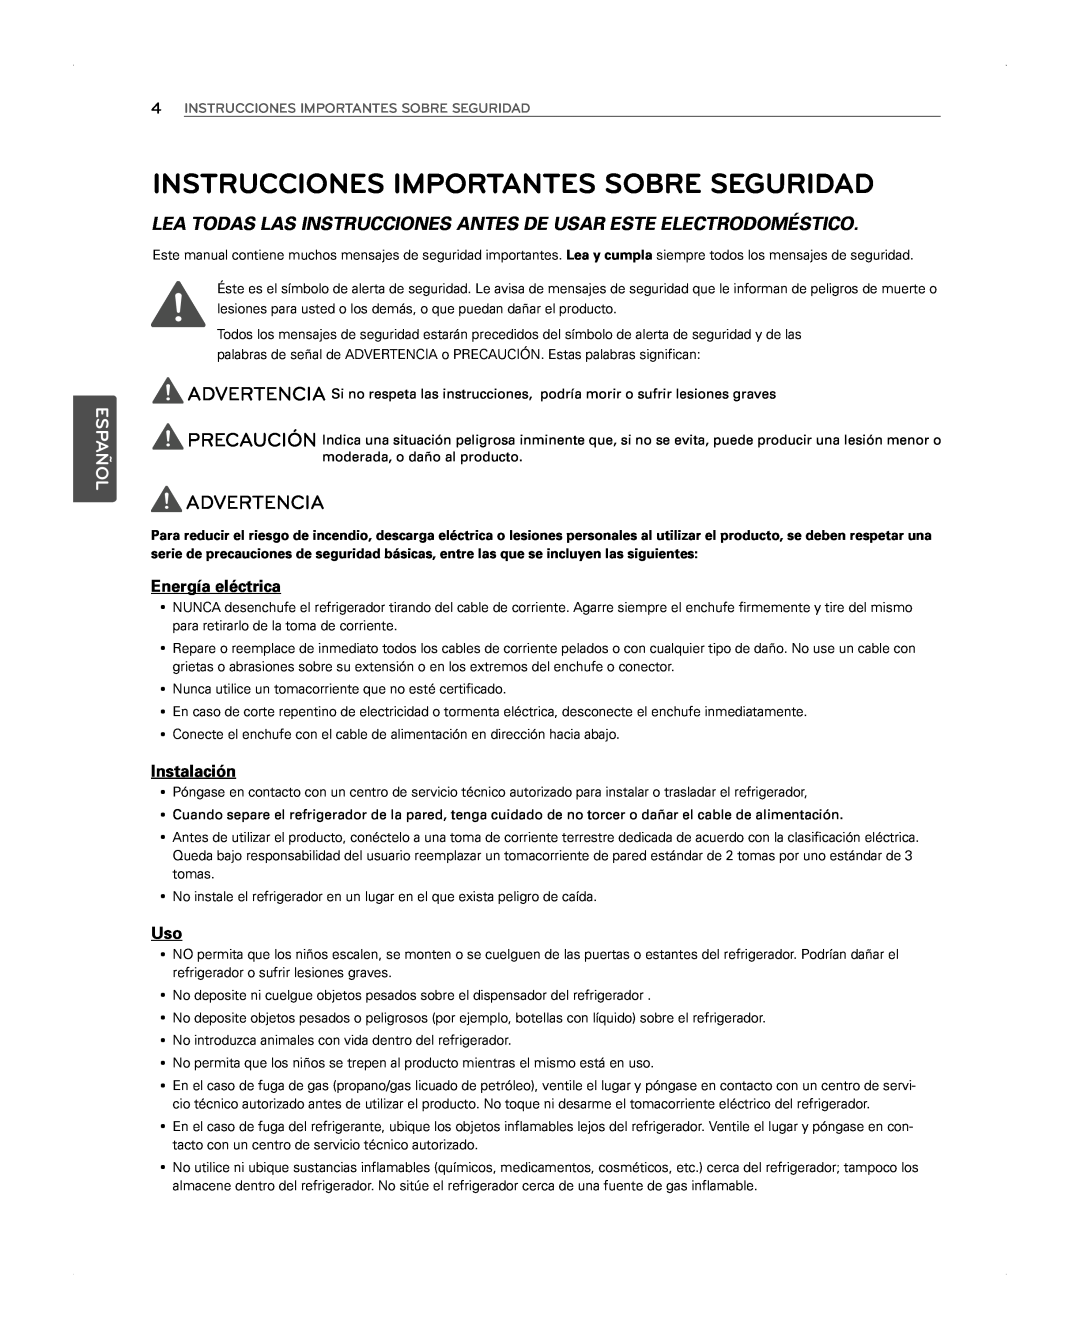 LG Electronics LFX31945ST Instrucciones Importantes Sobre Seguridad, Advertencia, Energía eléctrica, Instalación, Español 